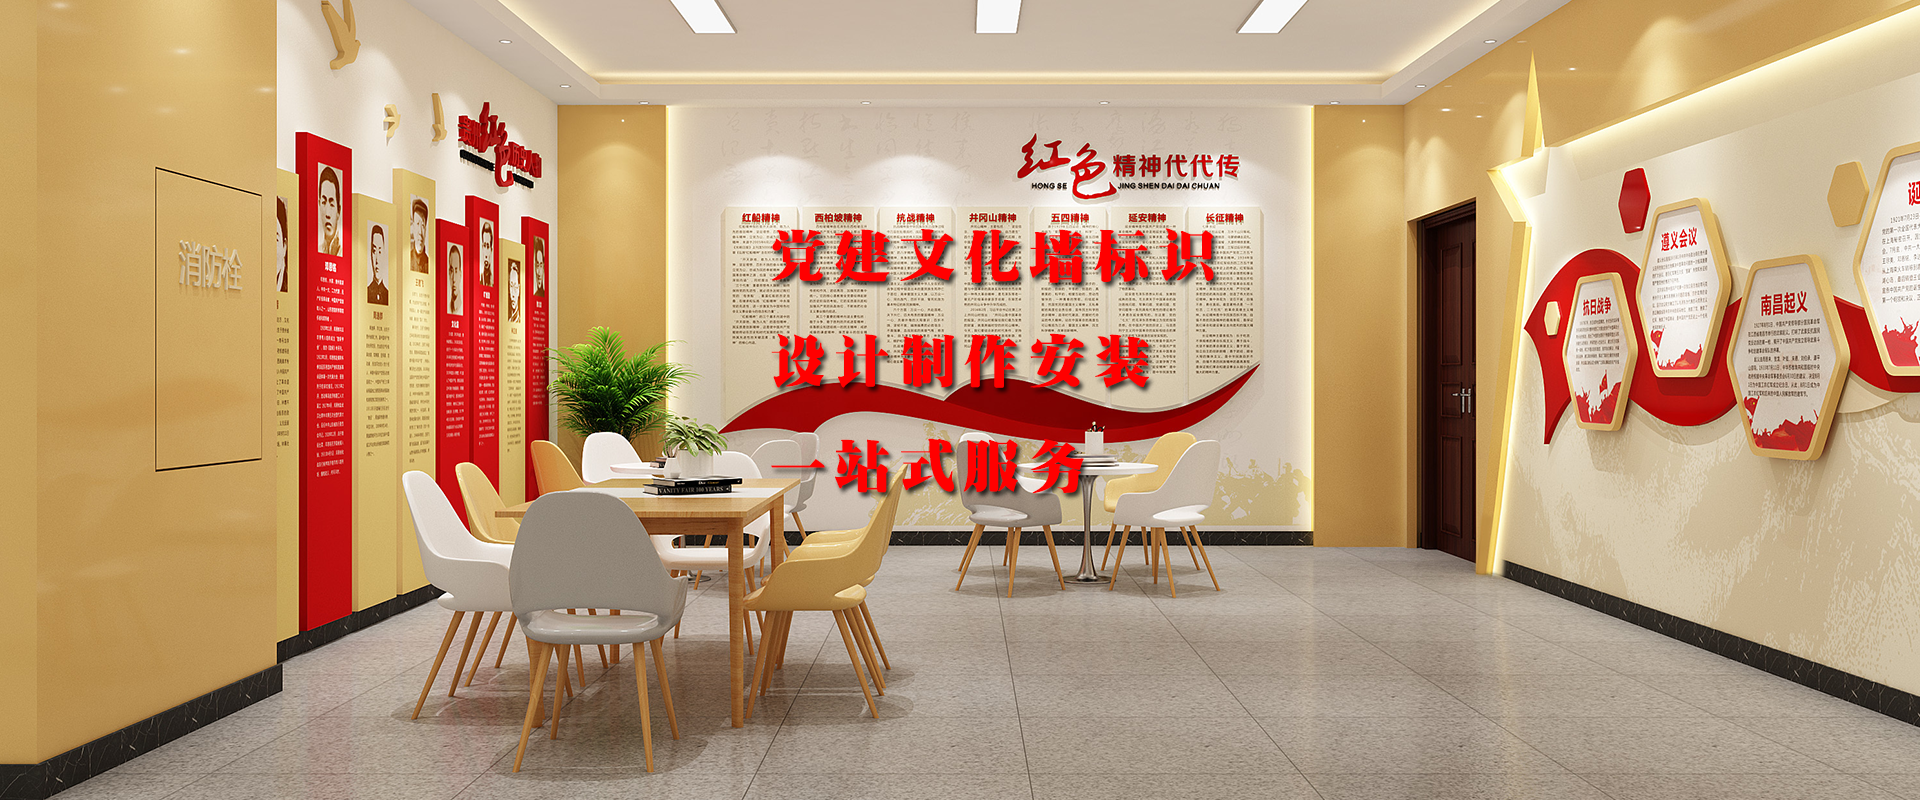 武汉党建文化墙展厅展馆设计制作安装一站式服务